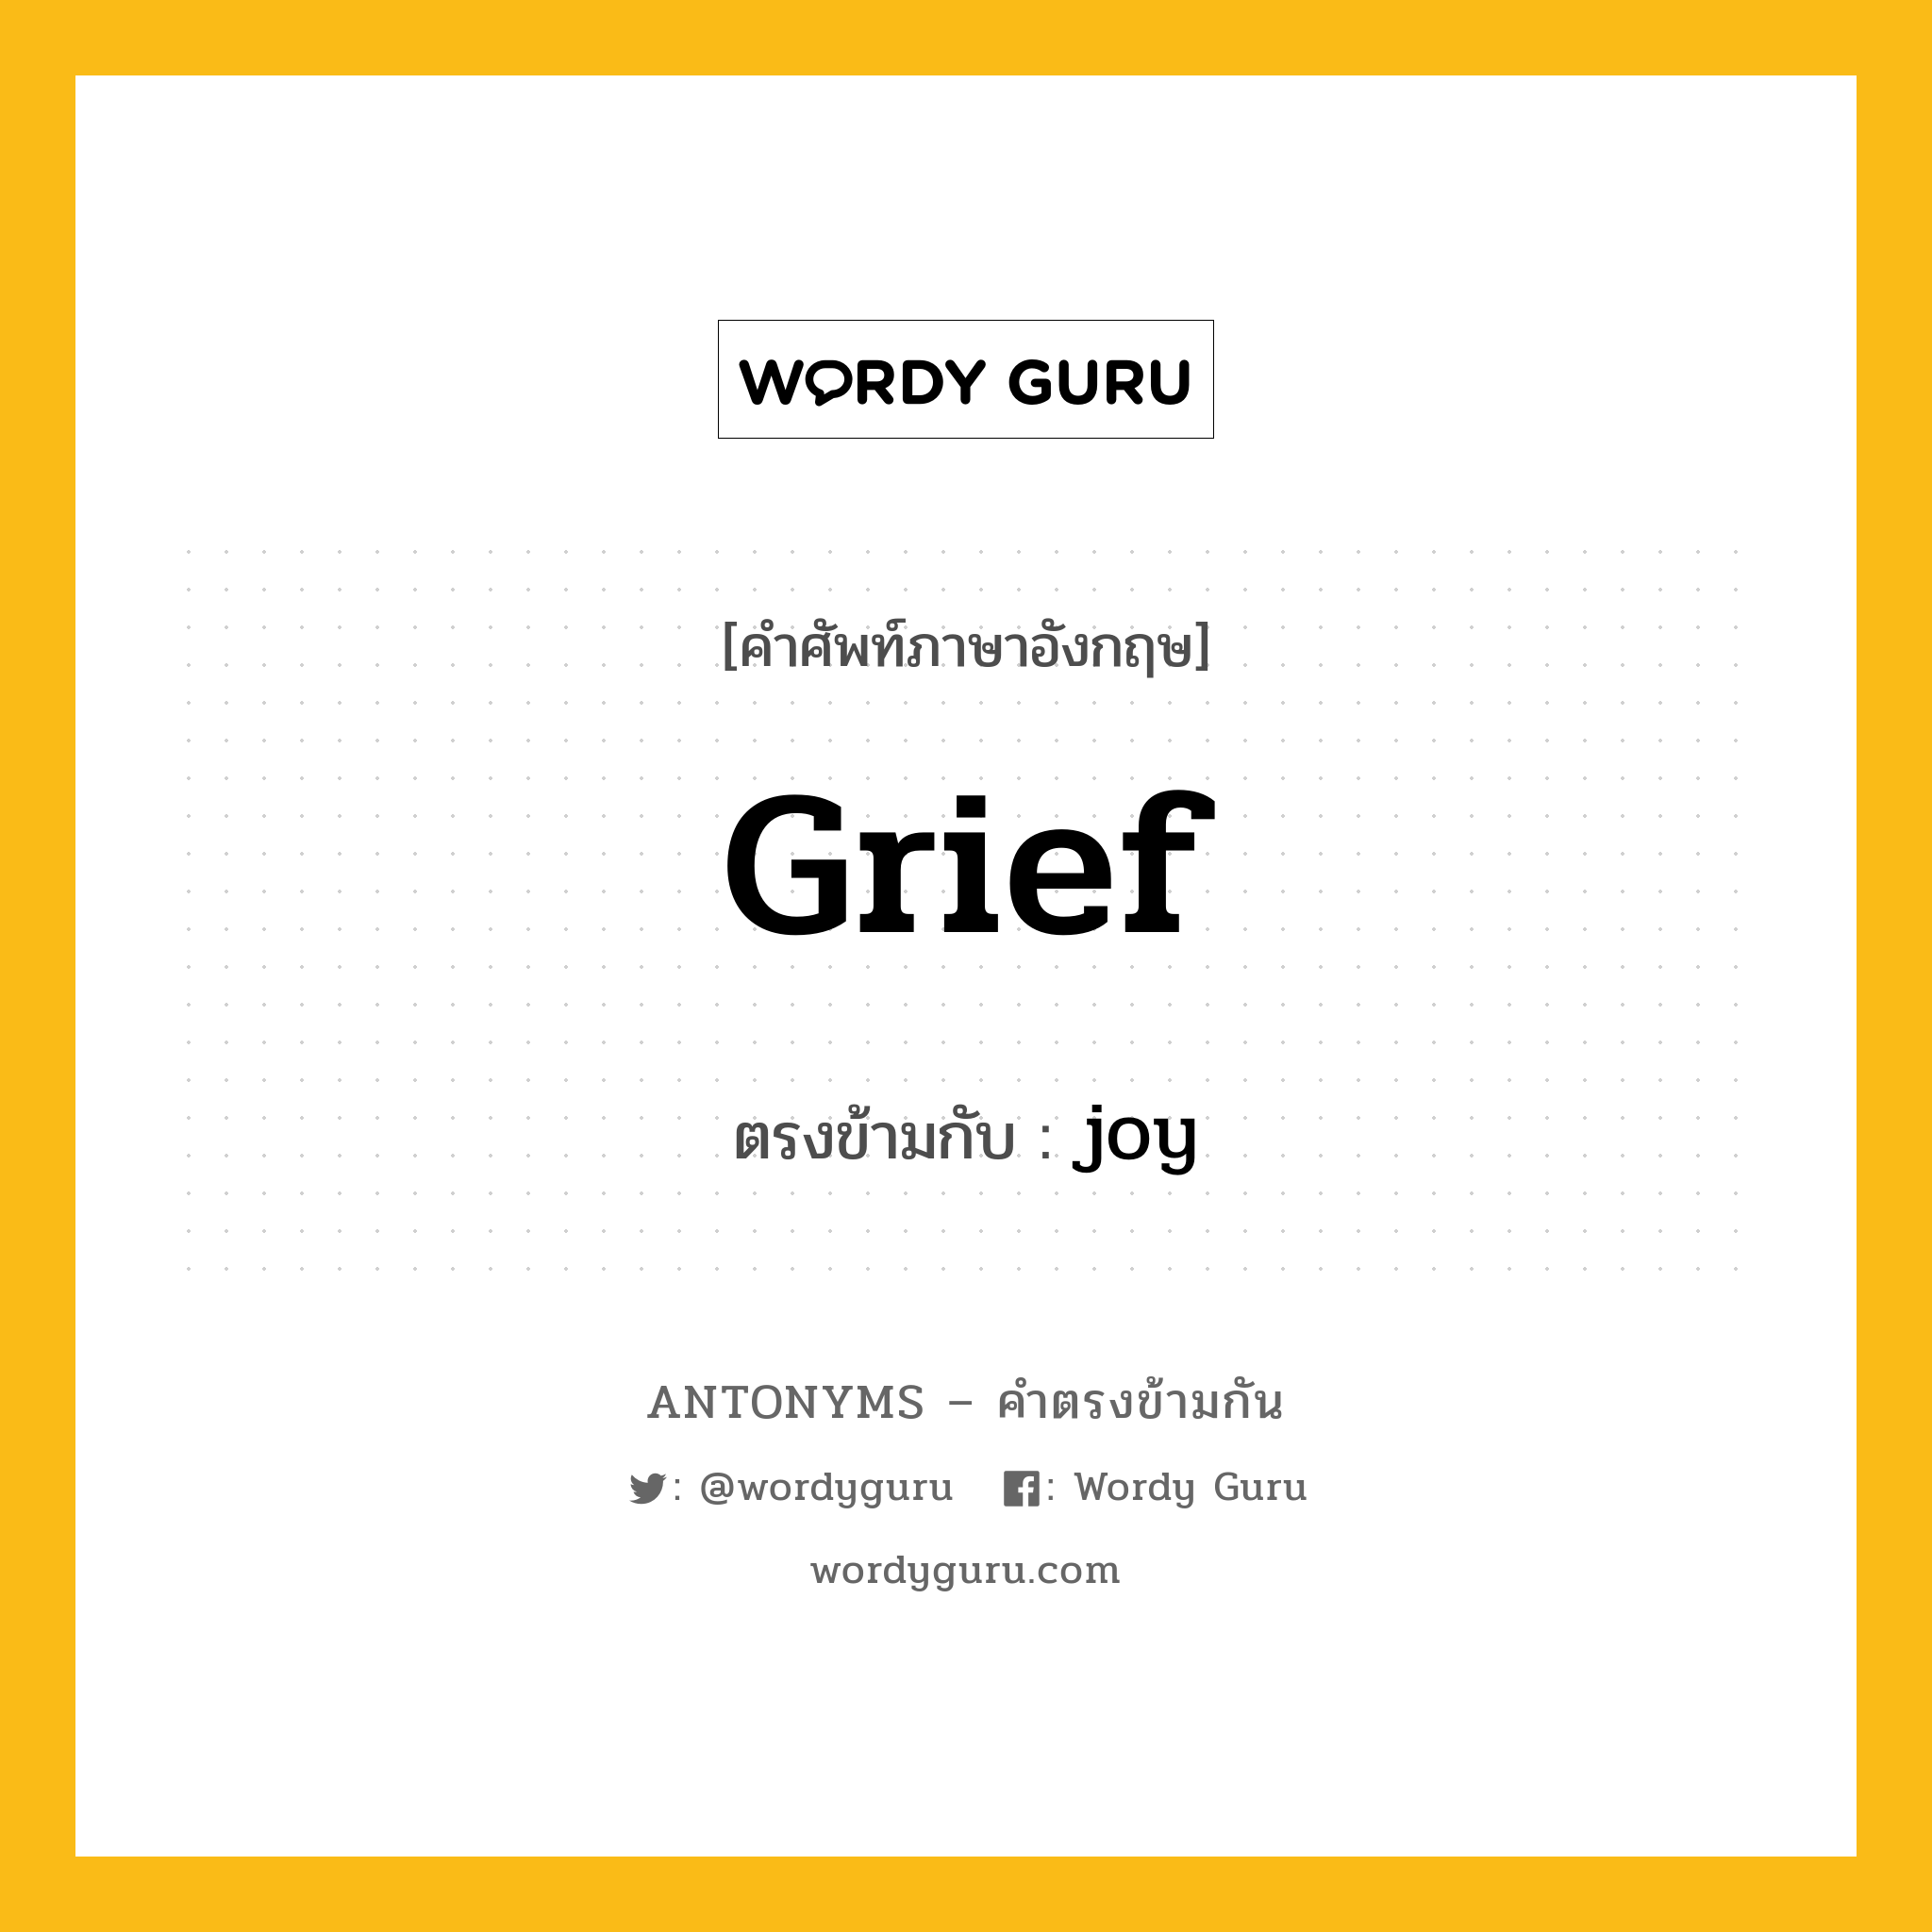 grief เป็นคำตรงข้ามกับคำไหนบ้าง?, คำศัพท์ภาษาอังกฤษที่มีความหมายตรงข้ามกัน grief ตรงข้ามกับ joy หมวด joy